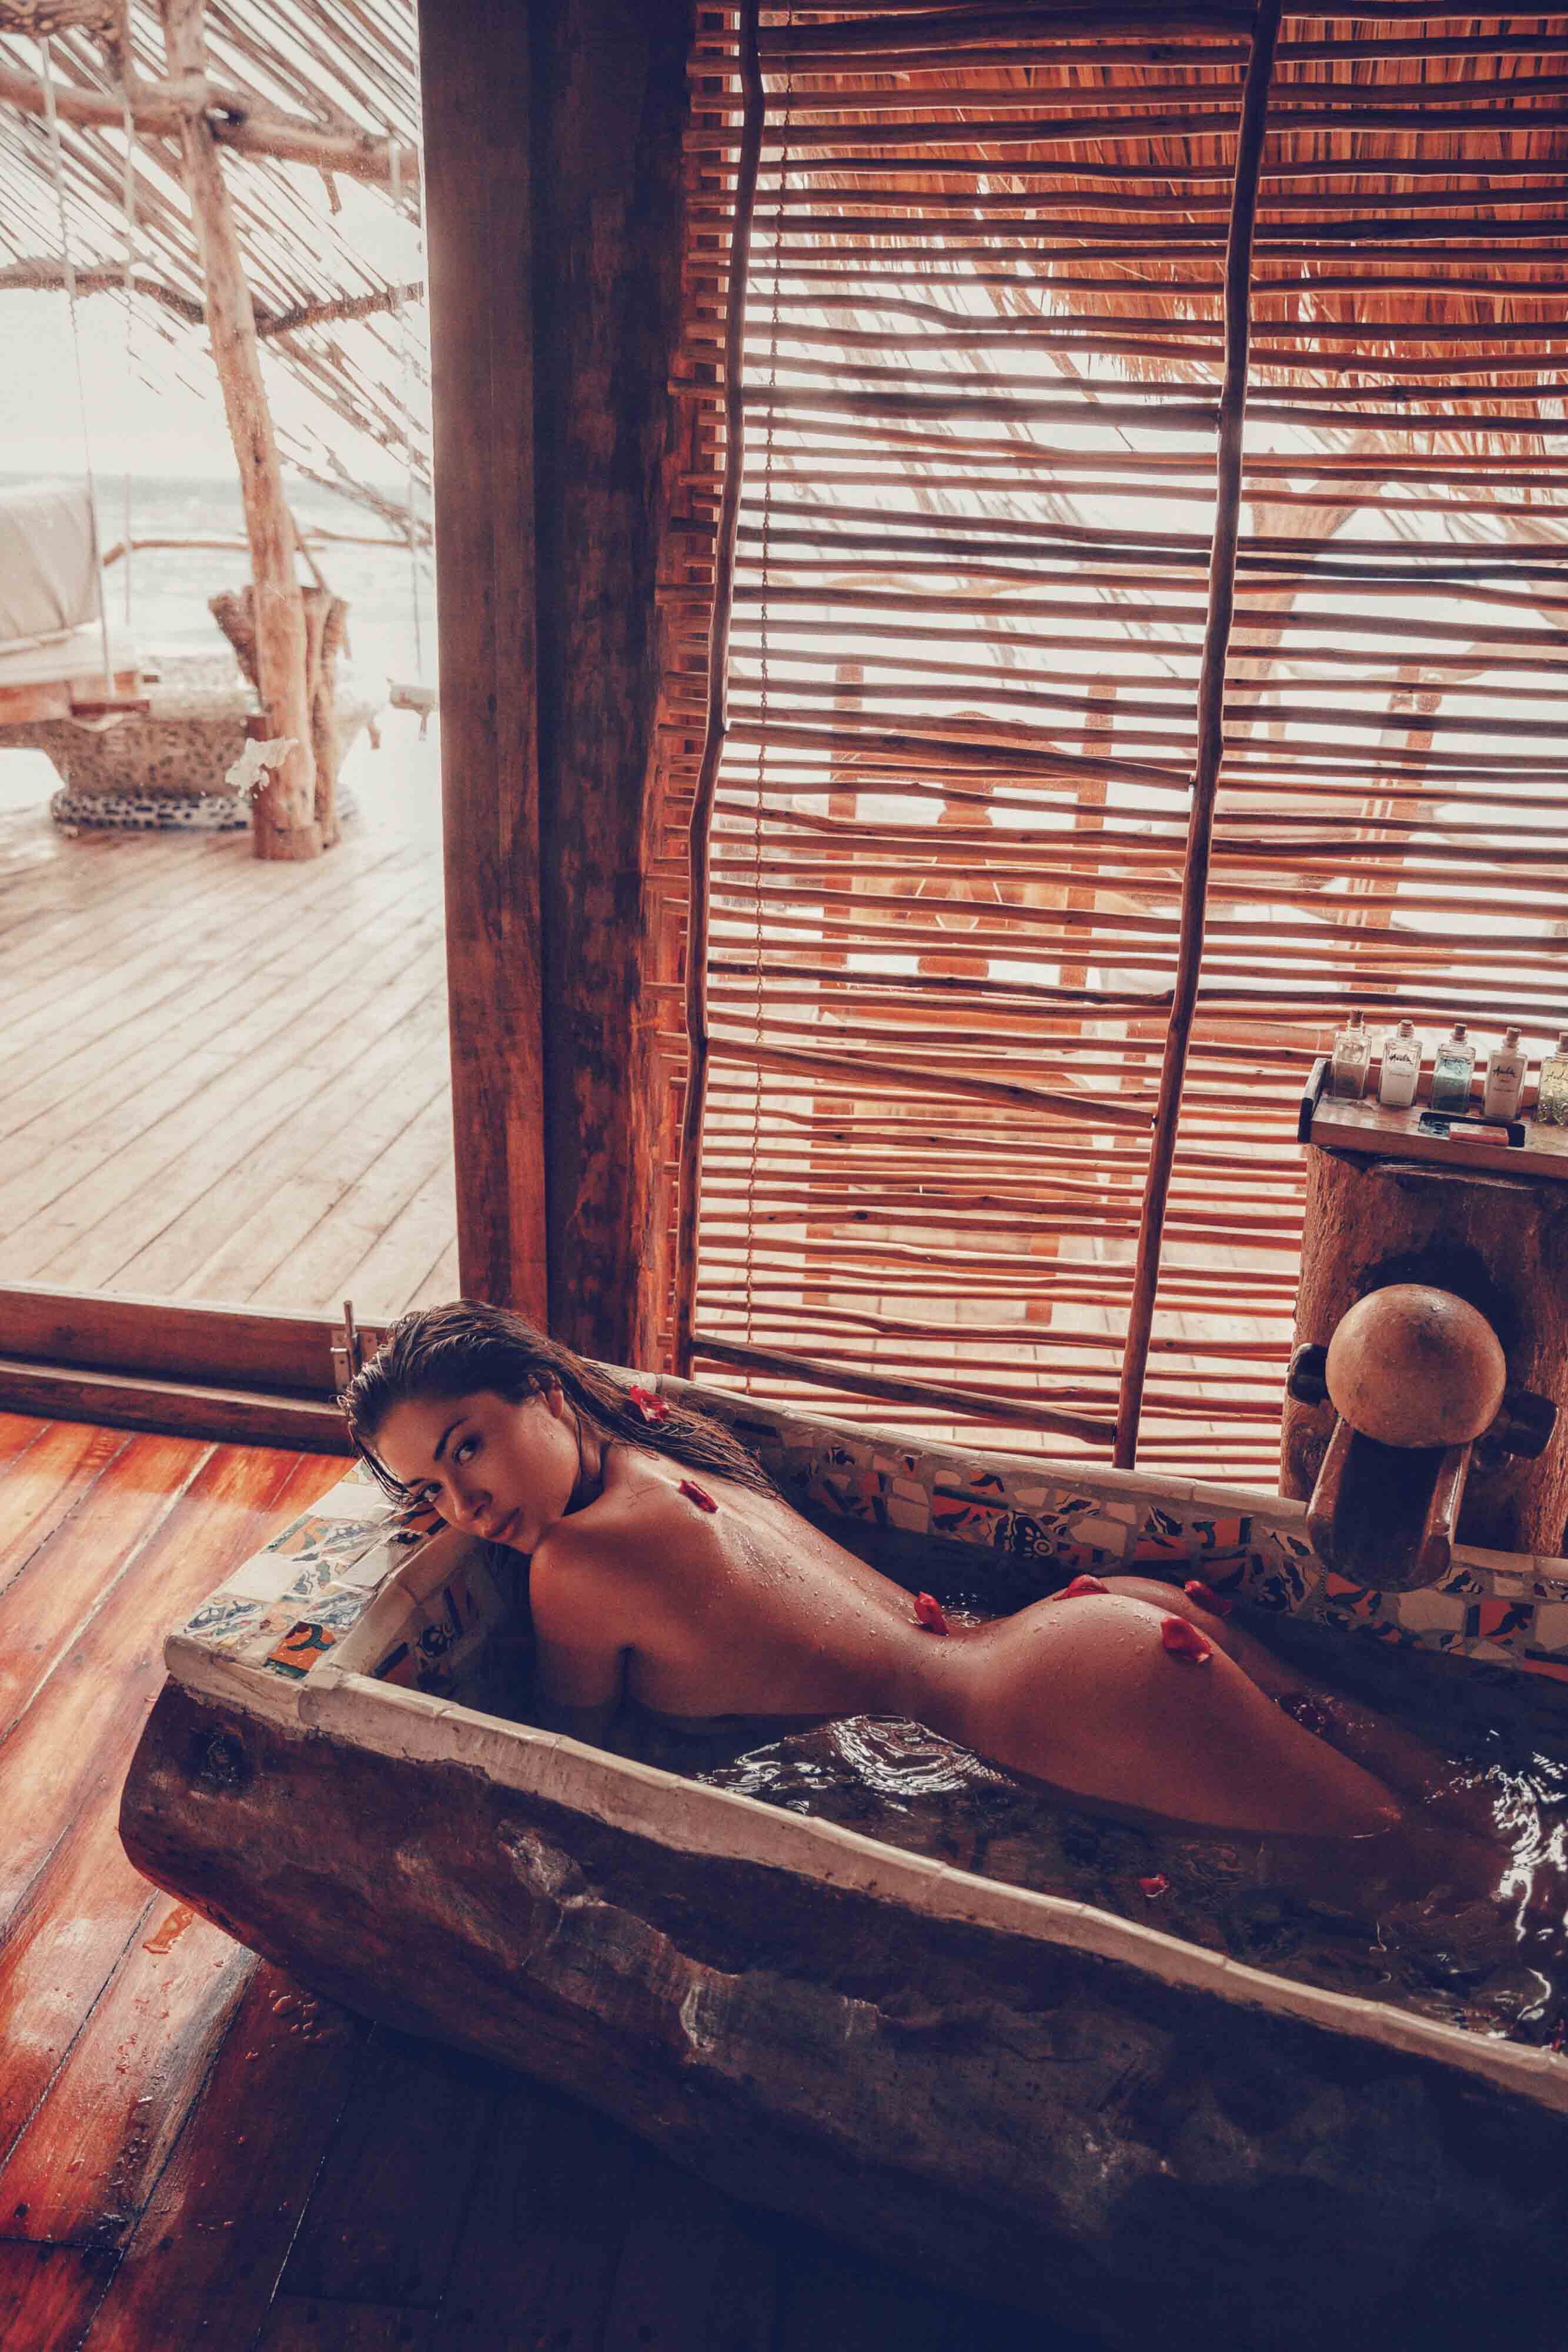 Arianny Celeste nude in TULUM MEXICO - Badboi photo shoot 20x UHQ photos 22.jpg